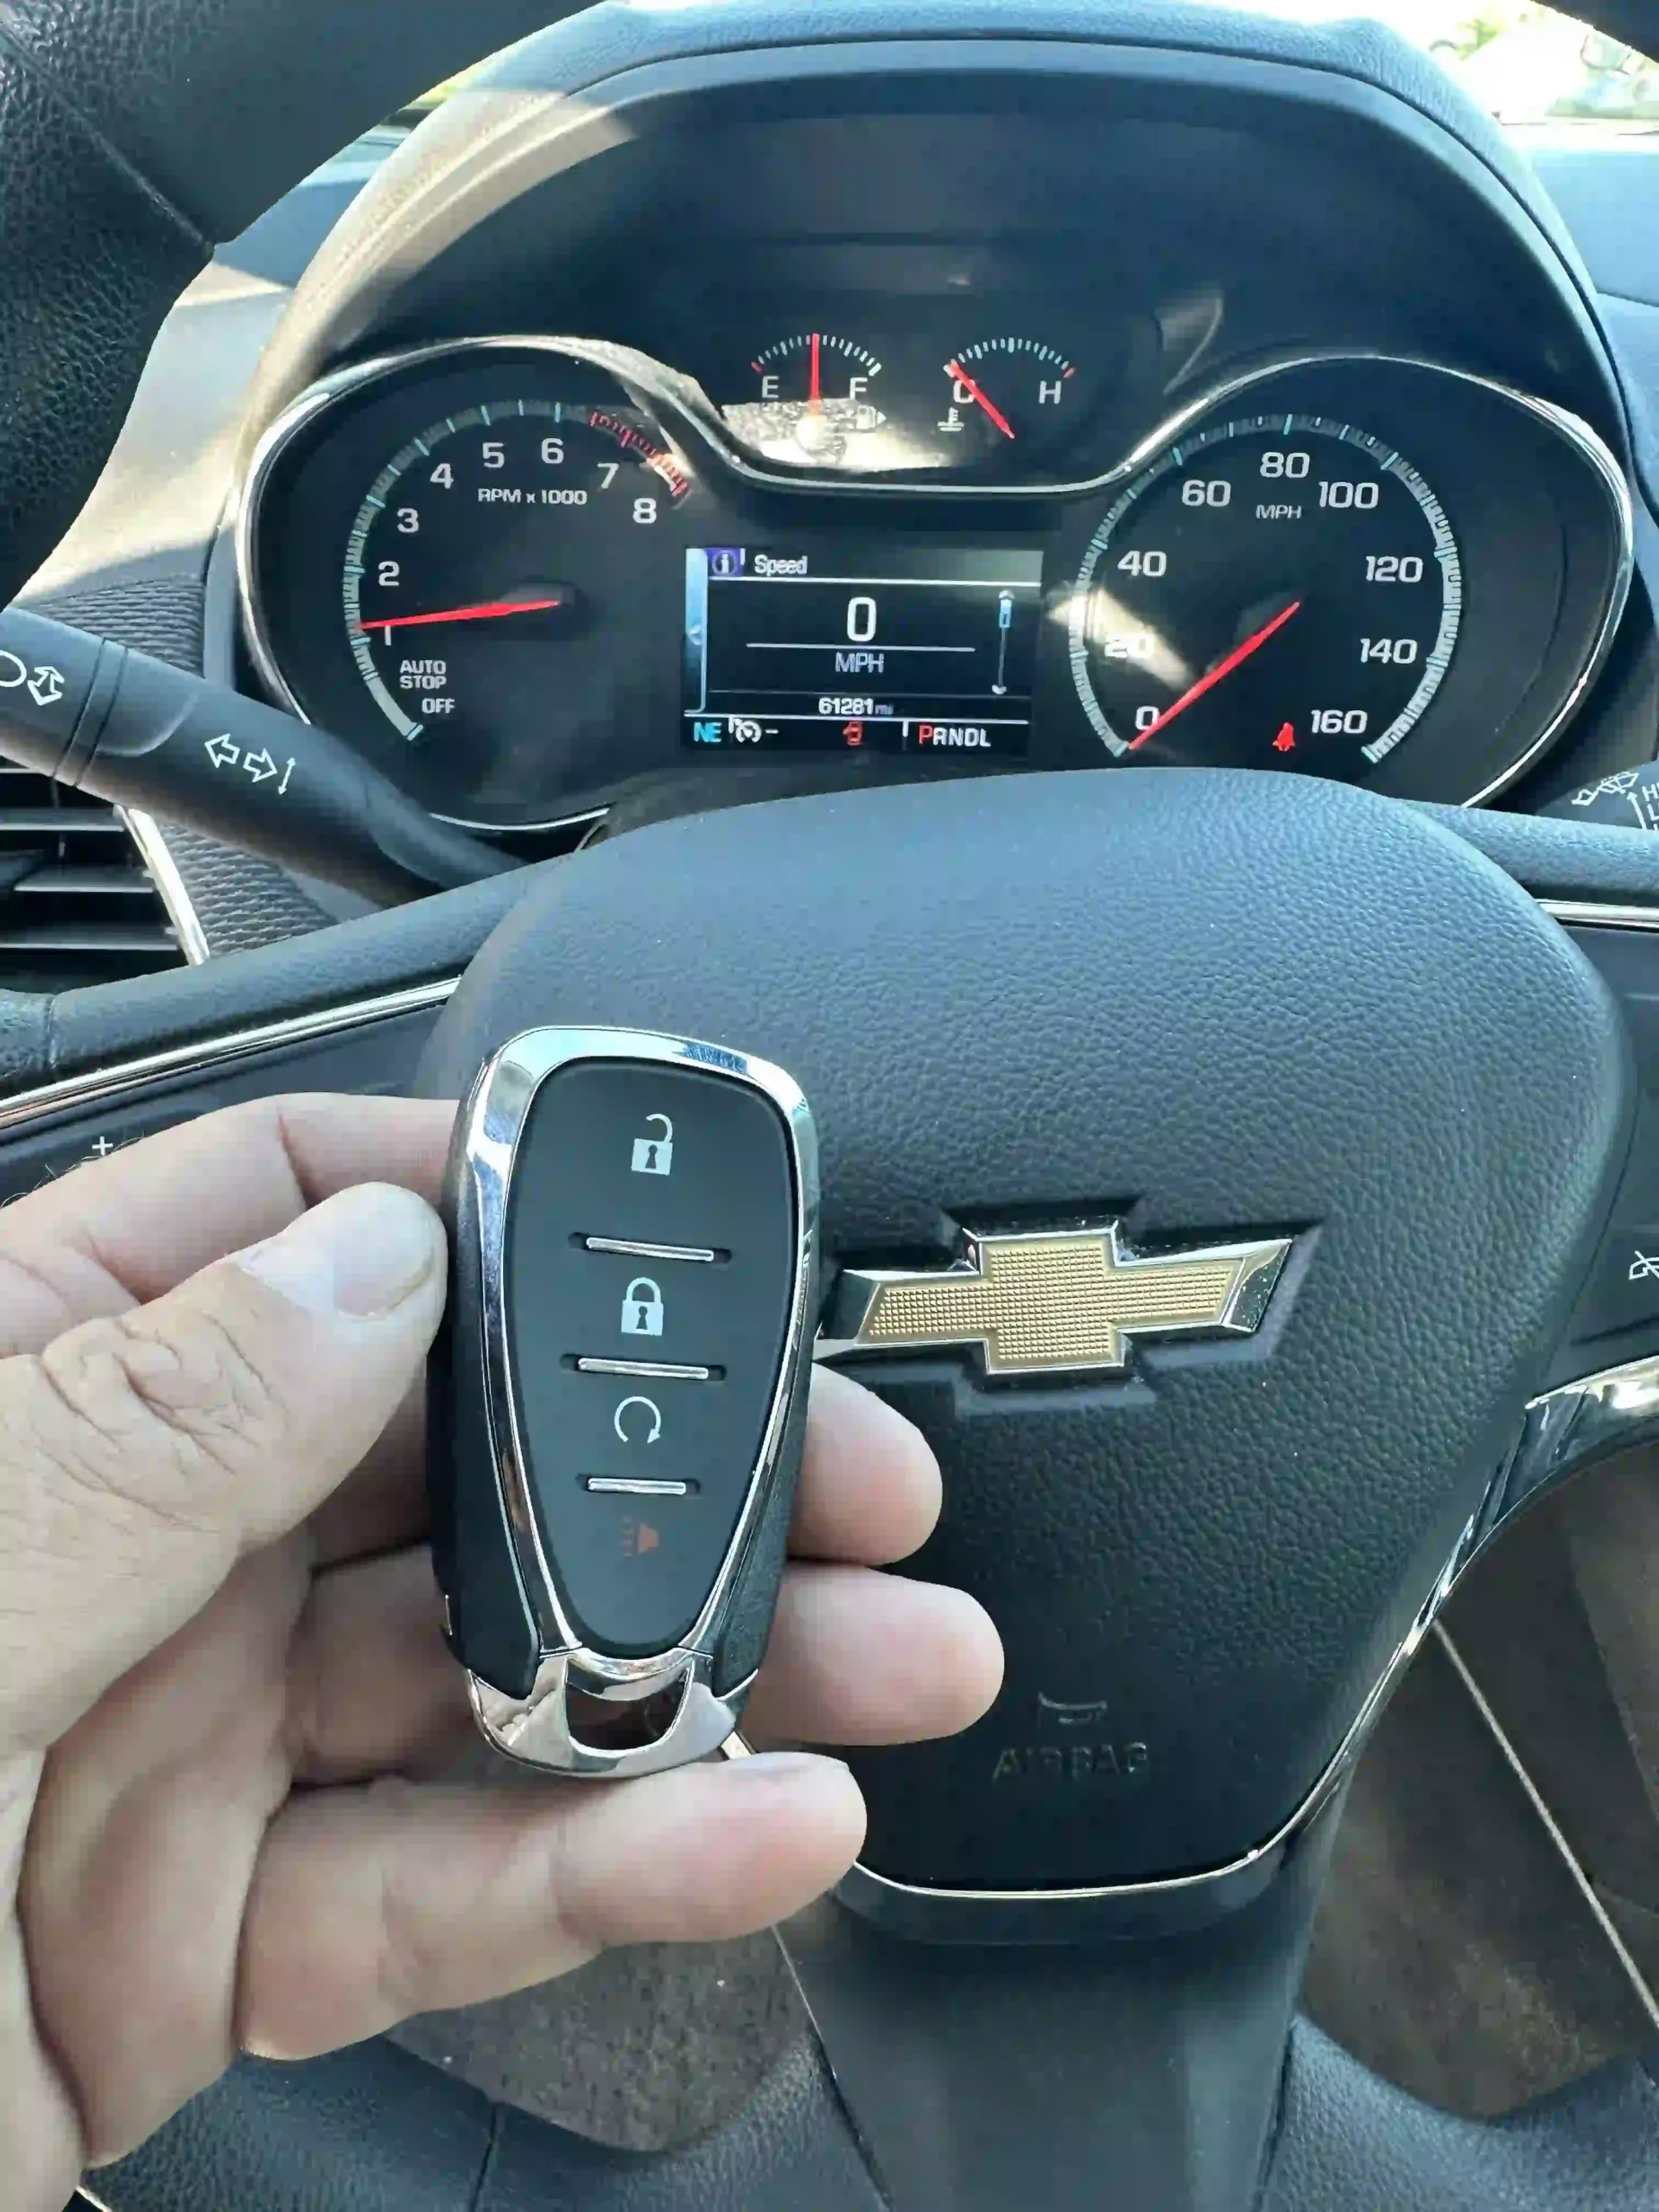 2023 Chevrolet Trailblazer Key Fob - Remotes and Transponder Keys